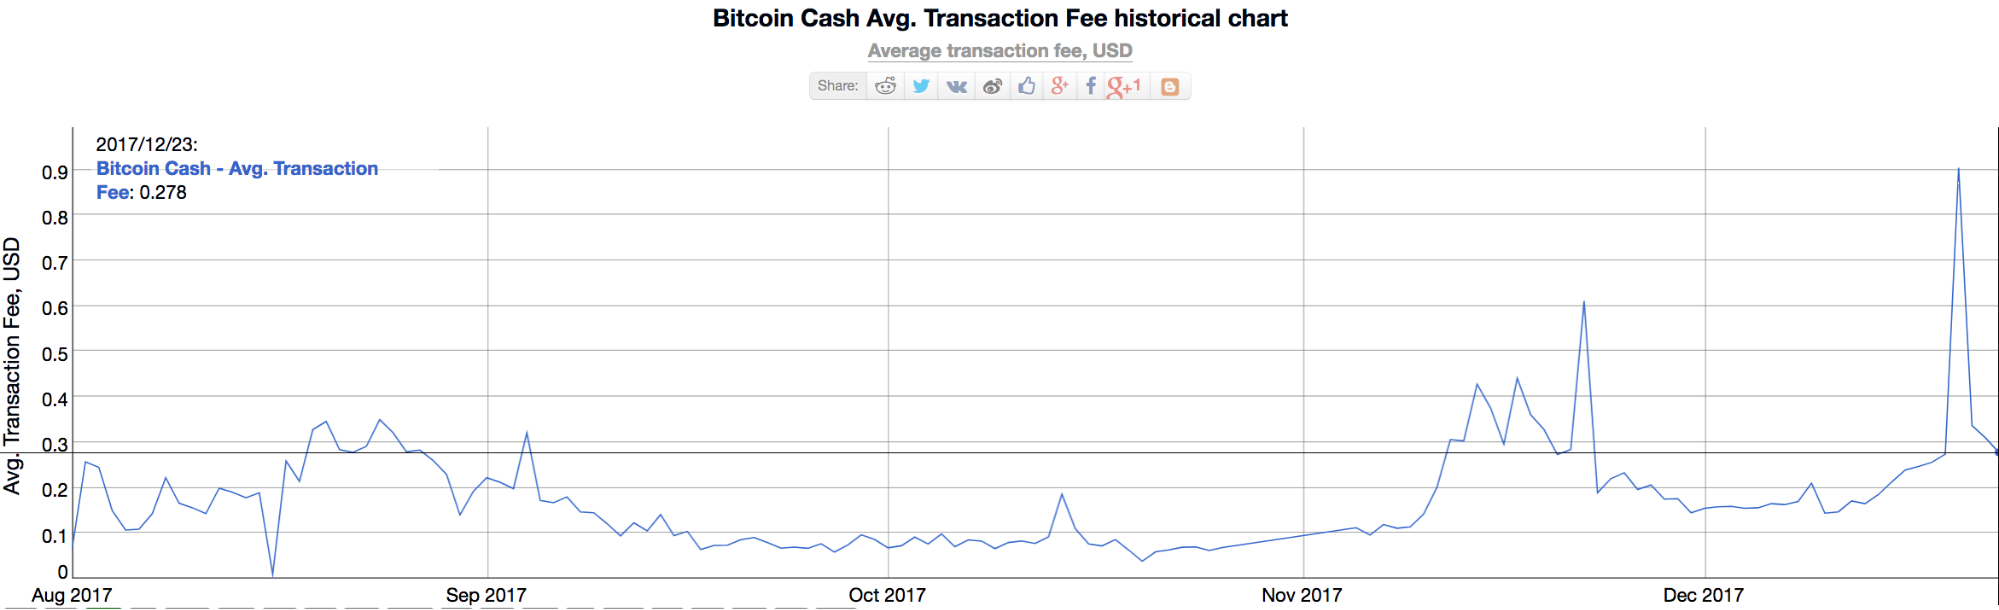 Wykres historyczny opłat za transakcje gotówkowe bitcoin